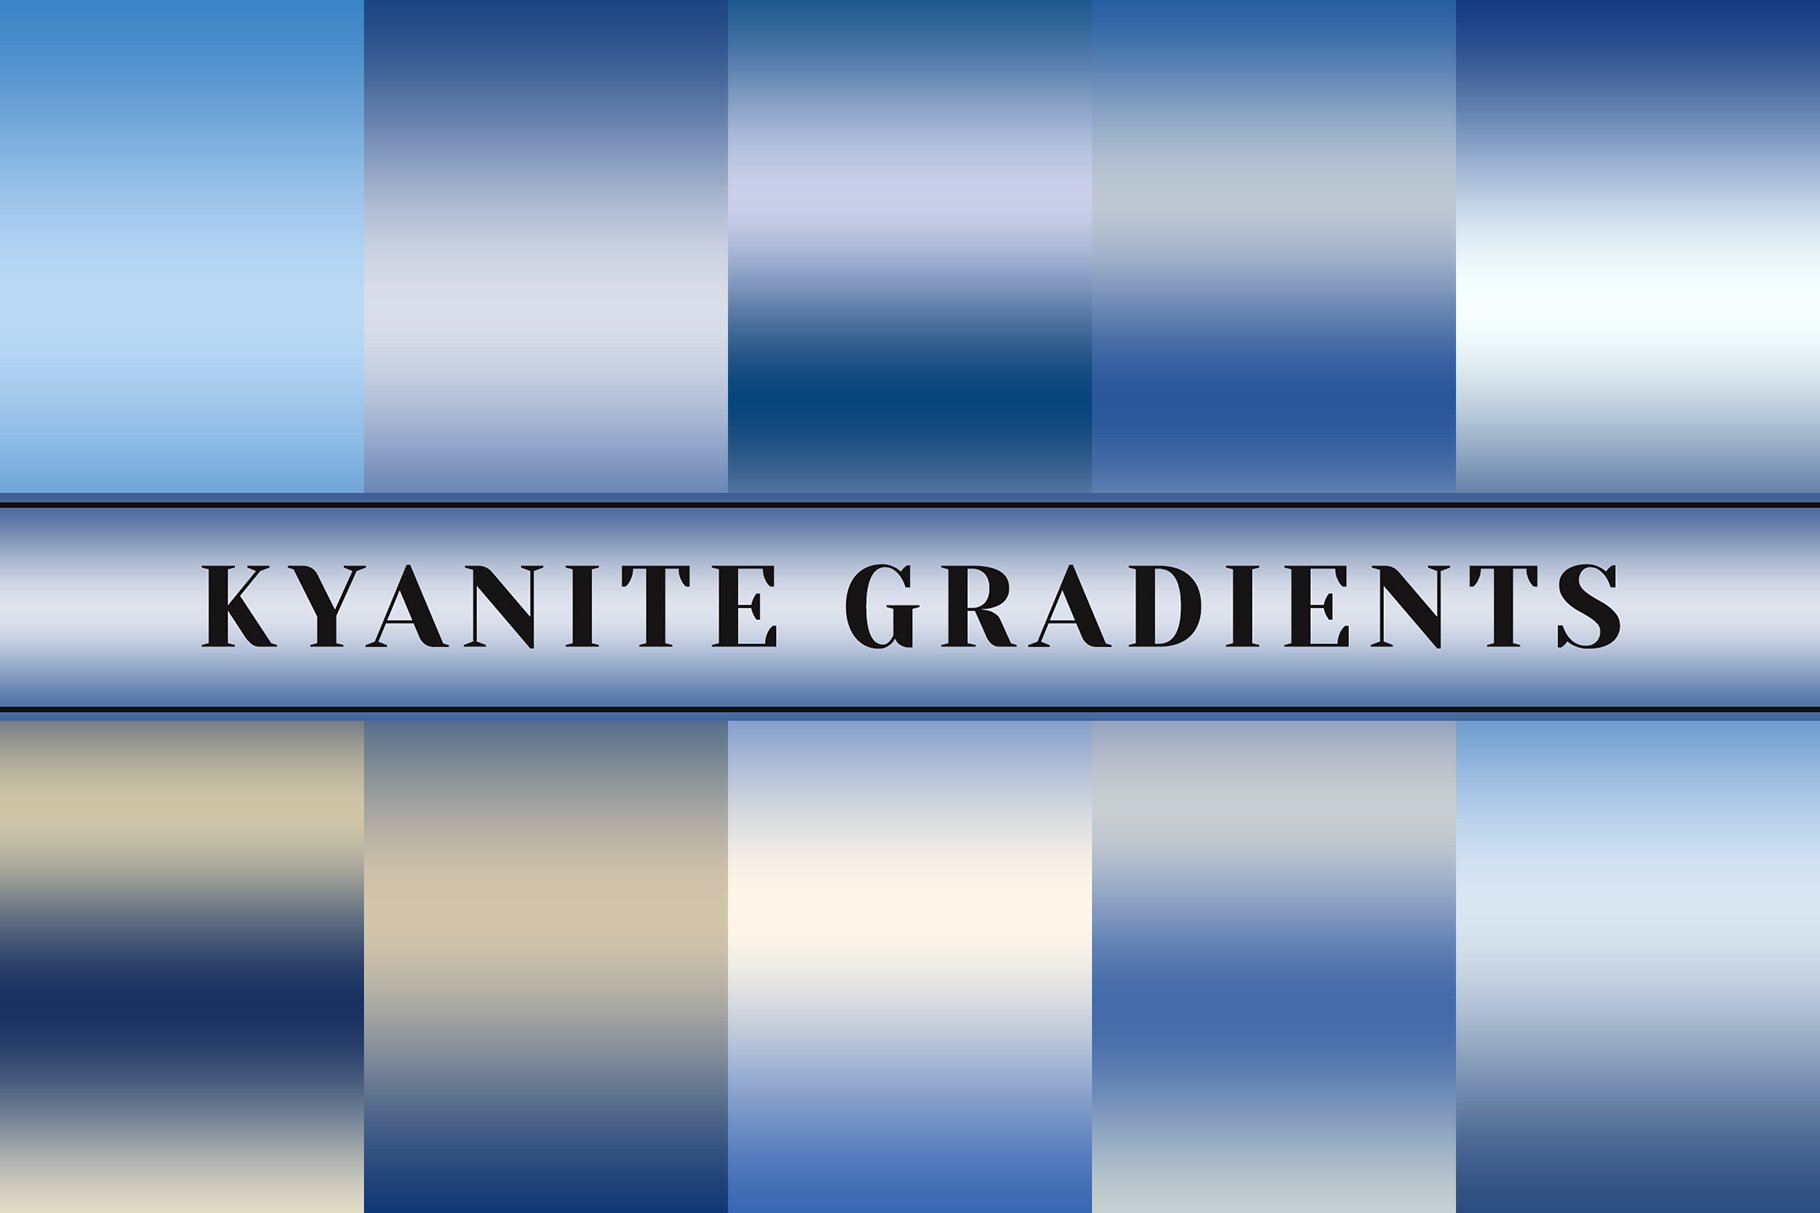 Kyanite Gradients cover image.